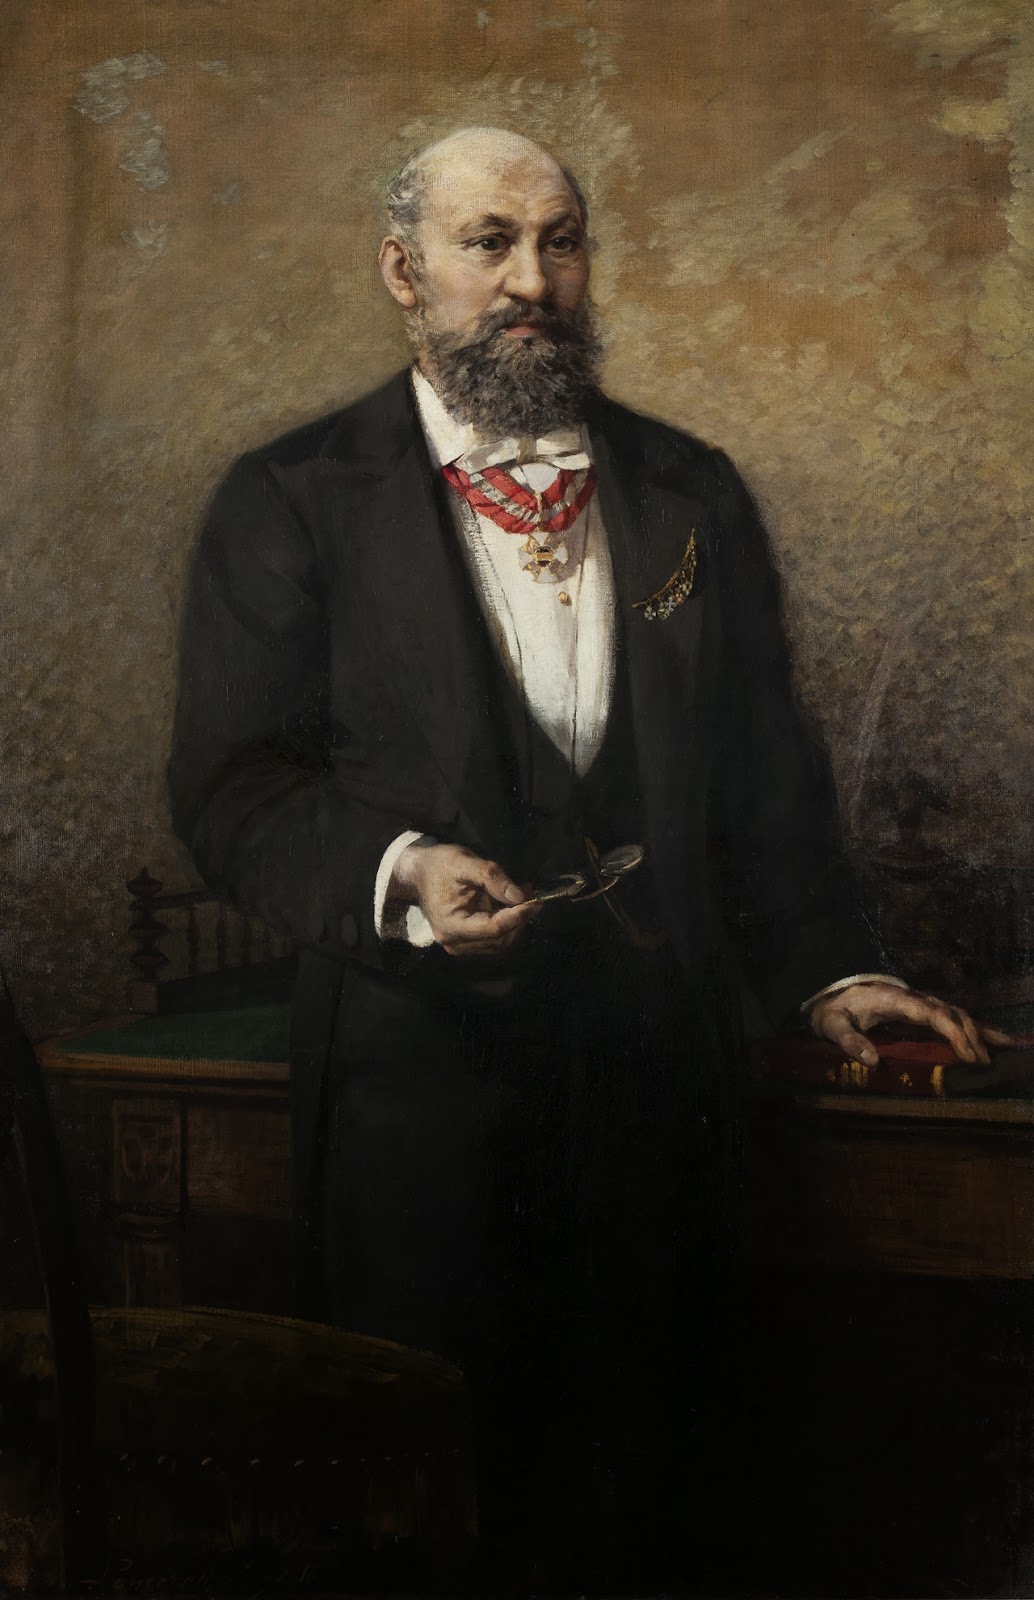 Giacomo+Favretto-1849-1887 (43).jpg